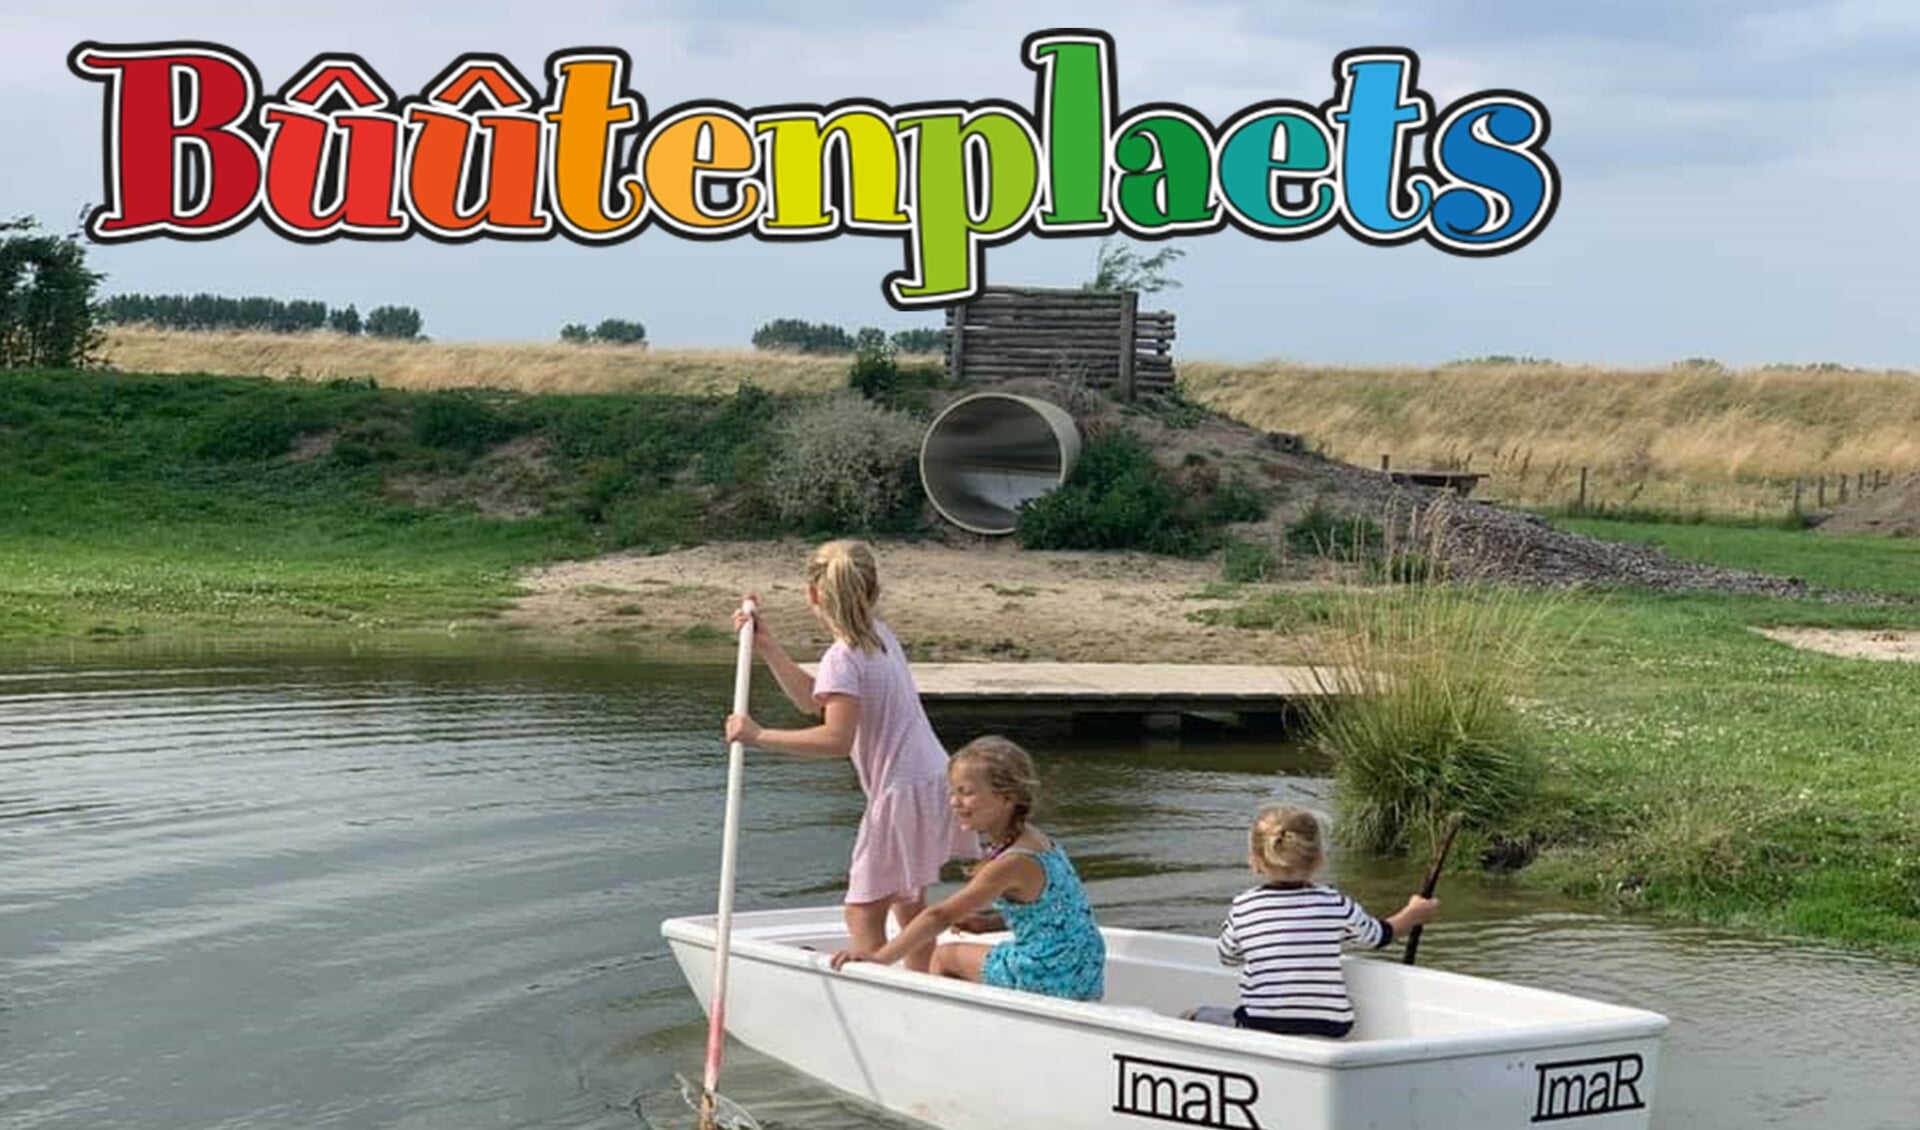 De komende weken organiseert de jeugdfaculteit van Ooltgensplaat een aantal vakantie-activiteiten op natuurspeeltuin de Buutenplaats. 